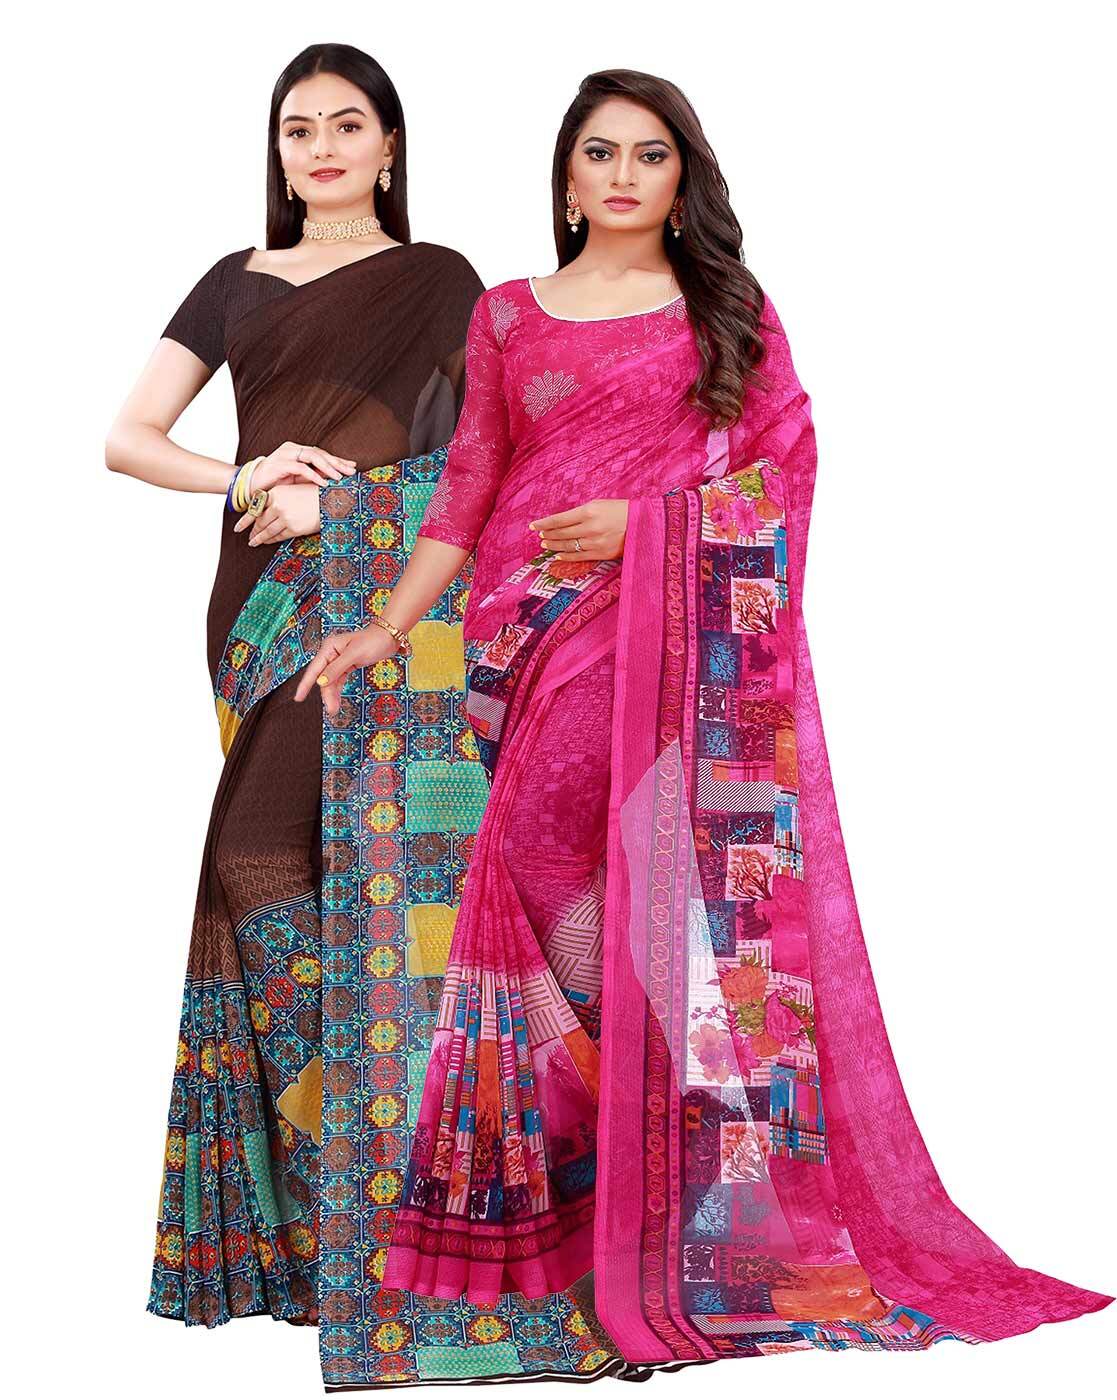 Saree Collection With Flipkart | Online Shopping Sarees | Flipkart sarees  Below 1000 Rupees - YouTube